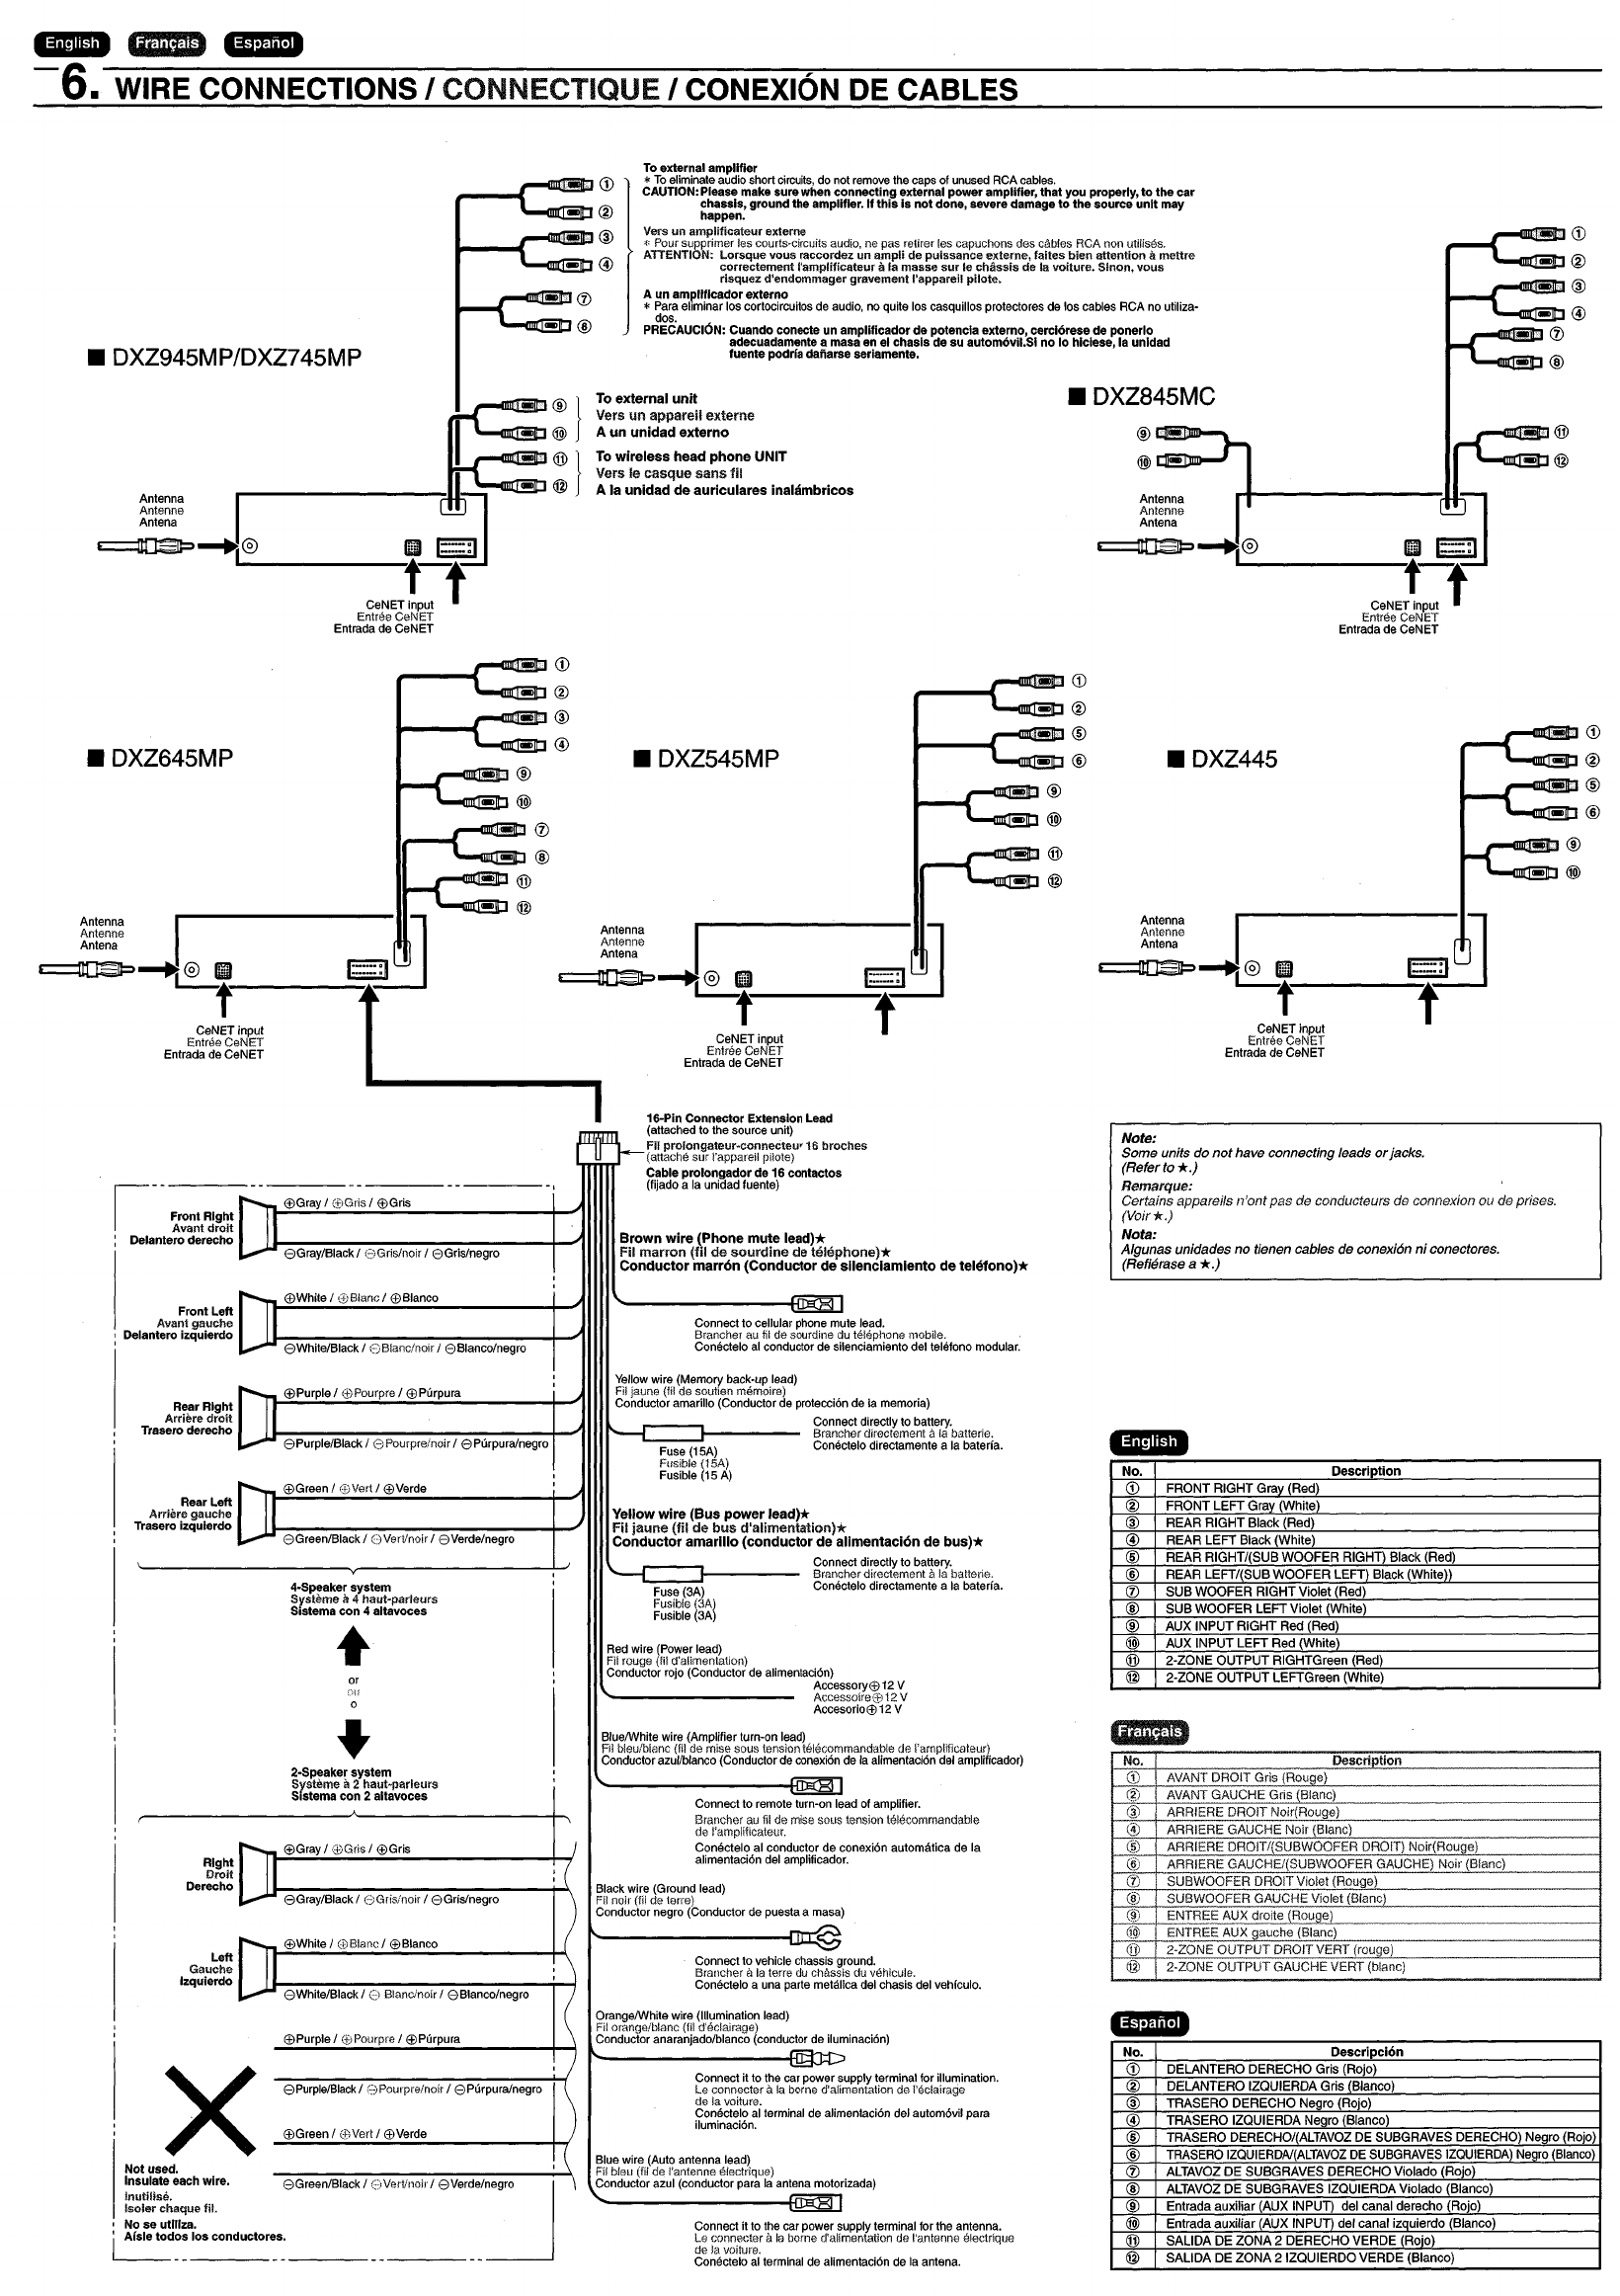 Diagram Clarion Xmd1 Wiring Diagram Full Version Hd Quality Wiring Diagram Seemdiagram Eracleaturismo It